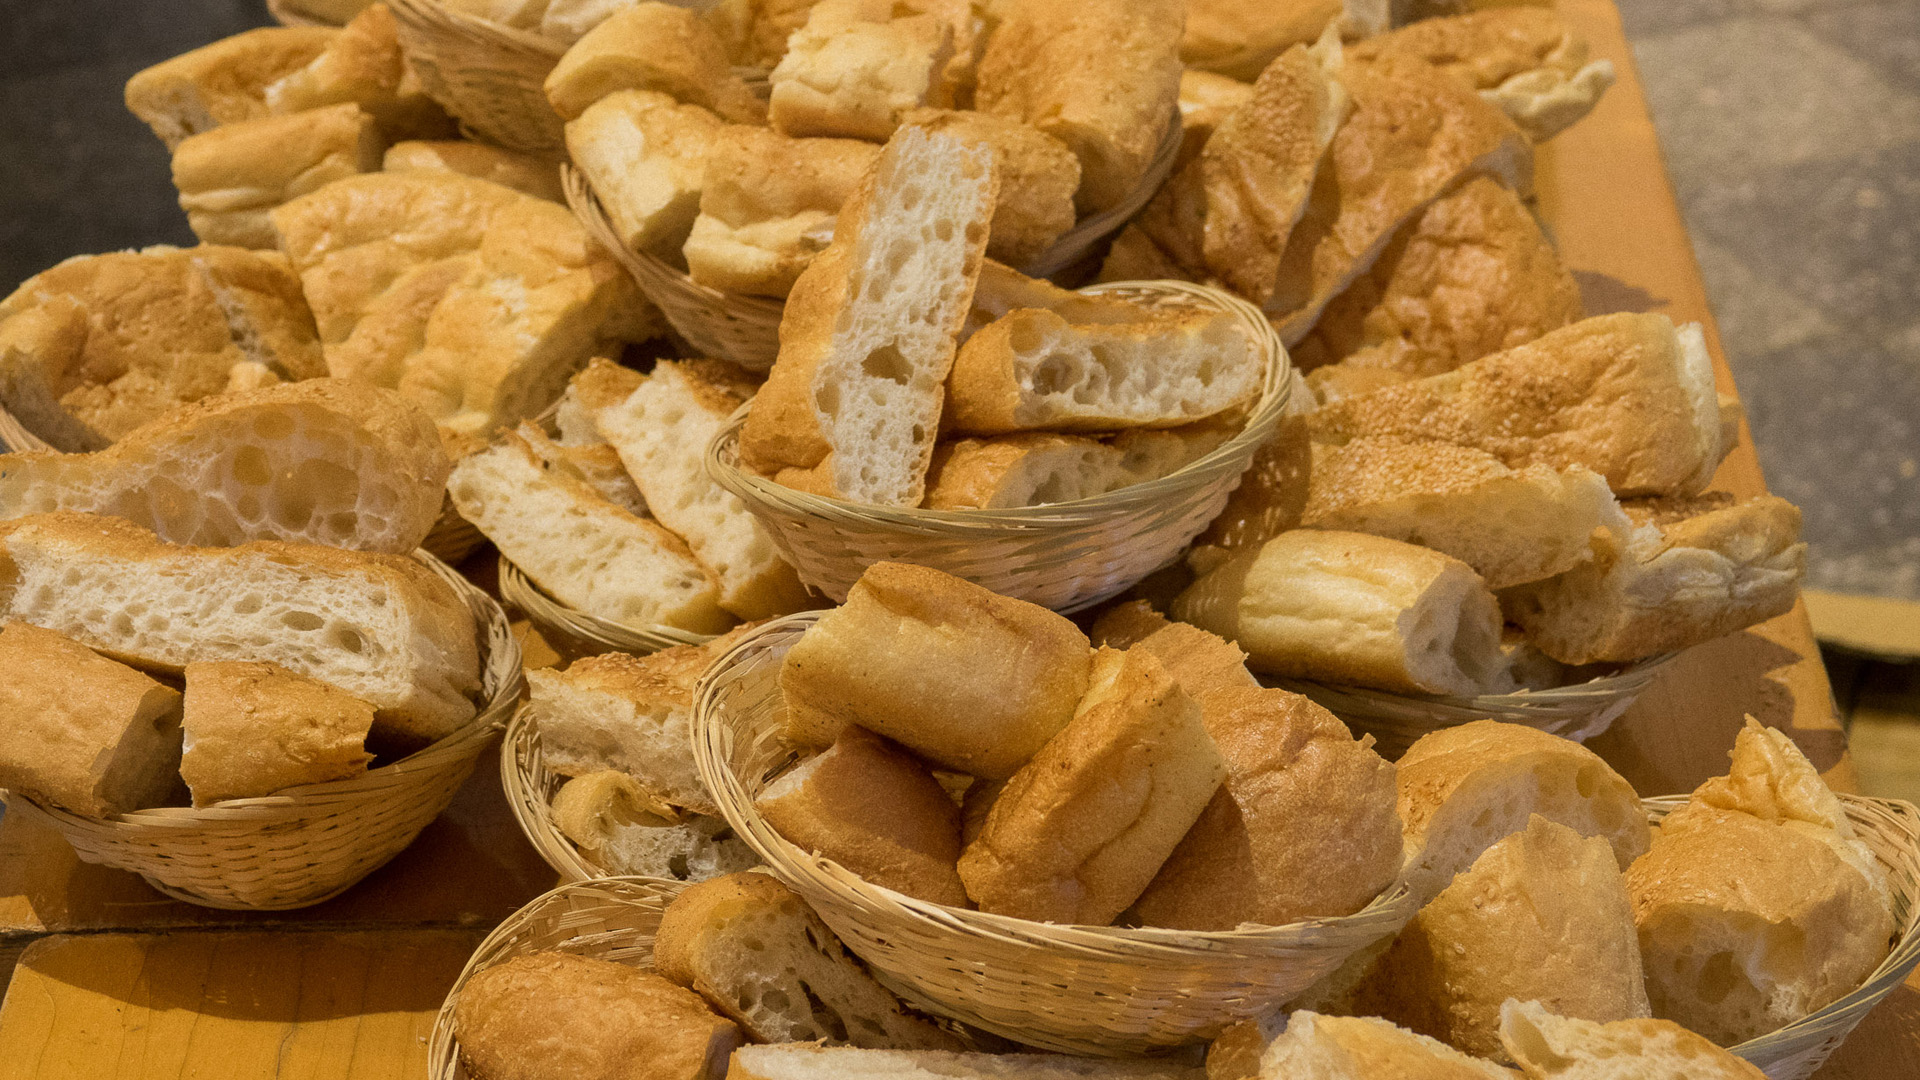 Als Zeichen der Gemeinschaft nahmen die Gottesdienstbesucher gemeinsam ein Agapemahl bestehend aus Brot und Trauben ein.